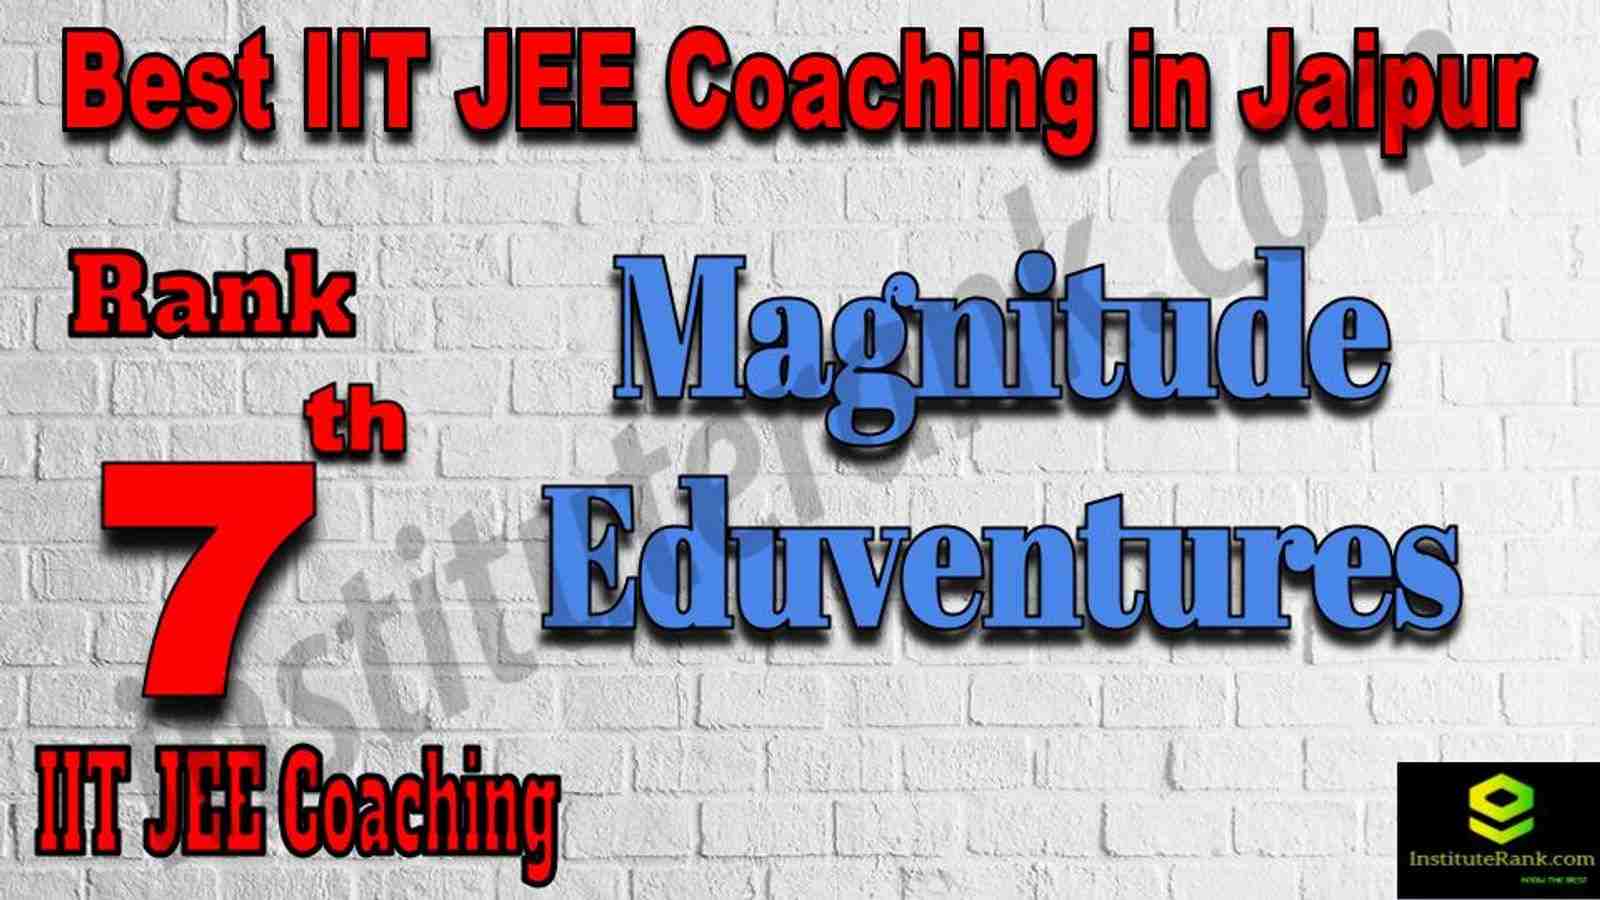 7th Best IIT JEE Coaching in Jaipur